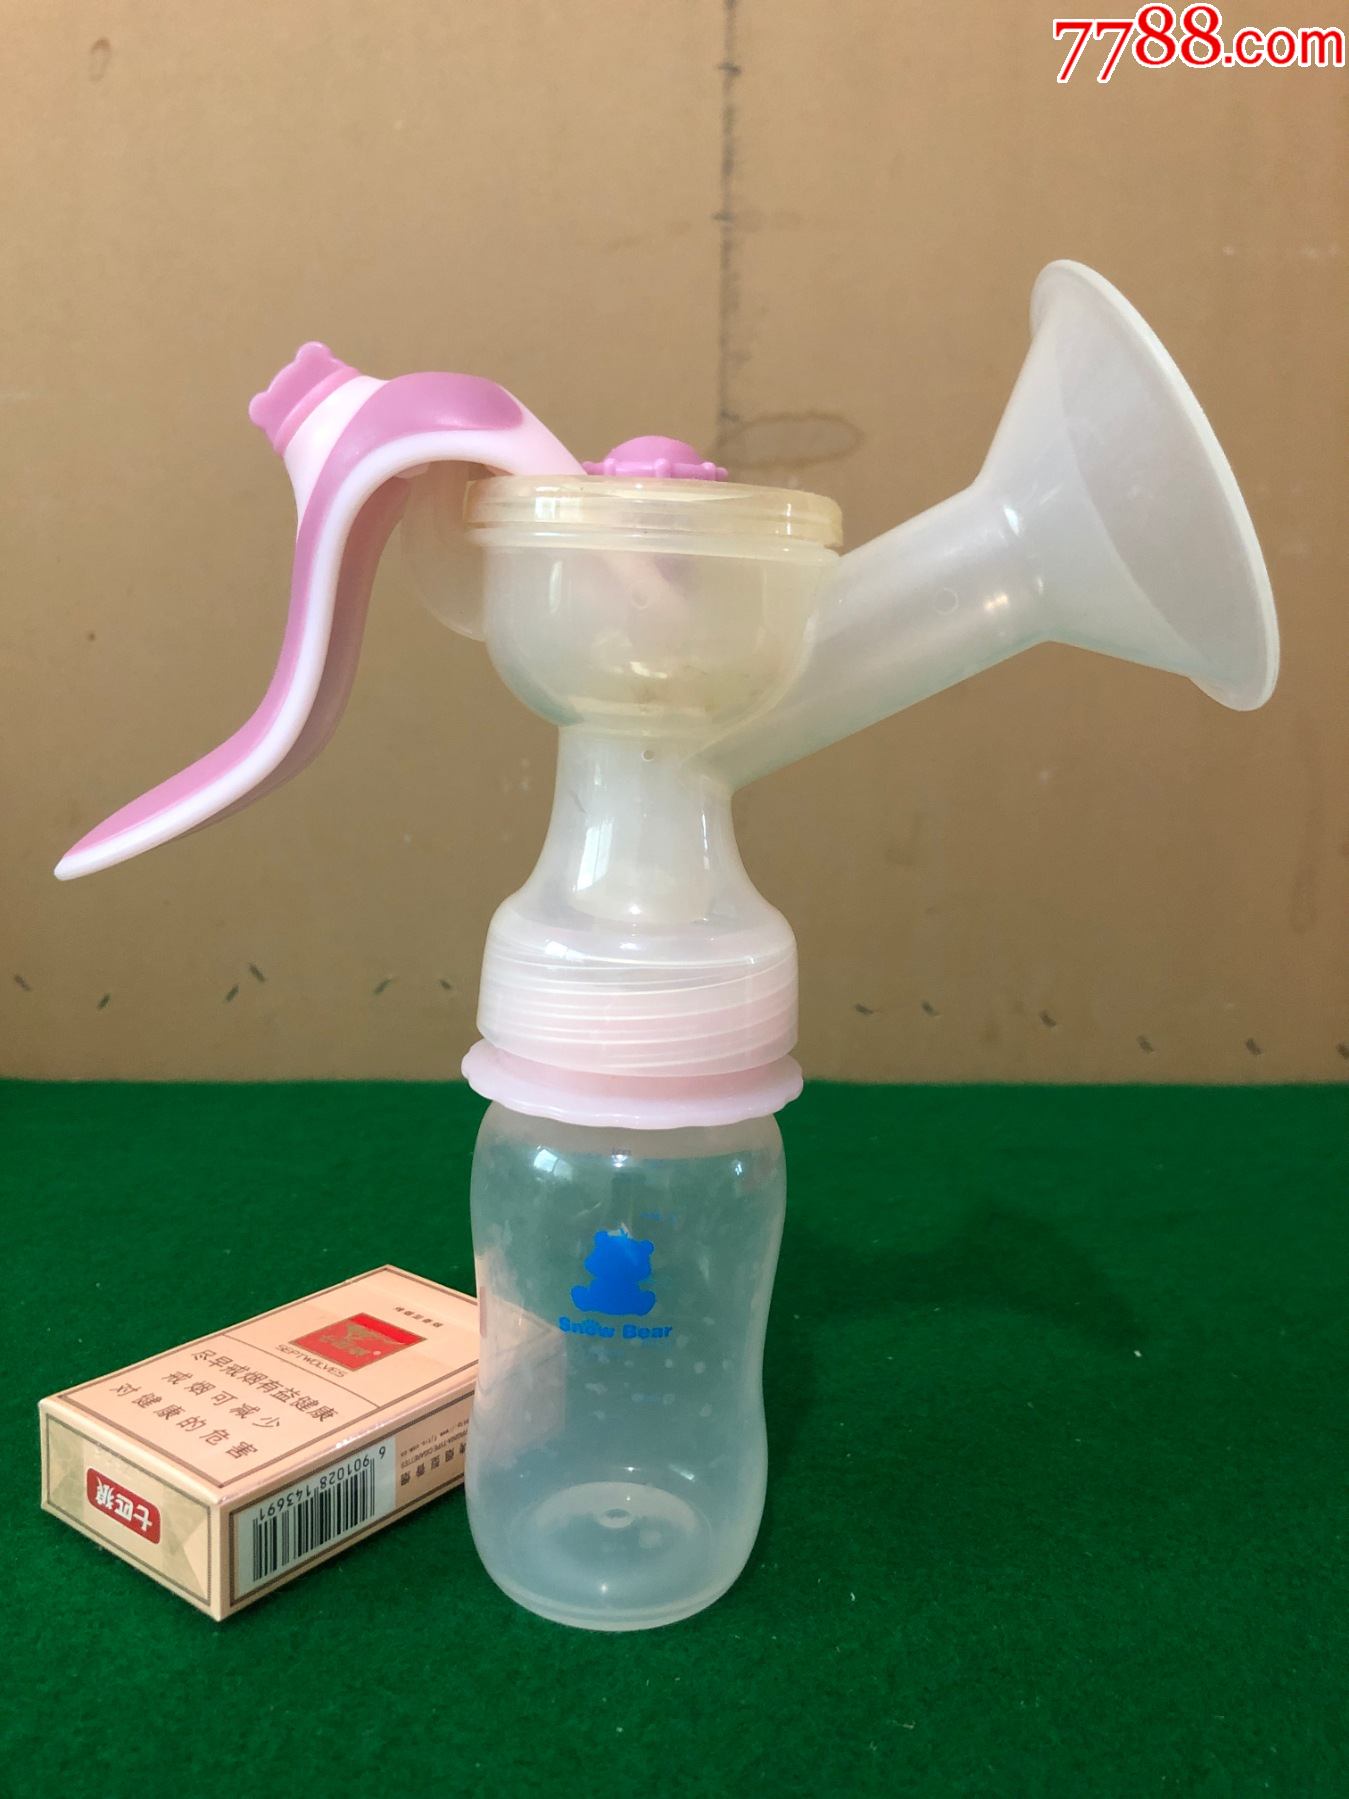 紫莓兔充电式电动吸奶器 吸乳器静音挤奶集奶器母婴用品非手动FDA-阿里巴巴